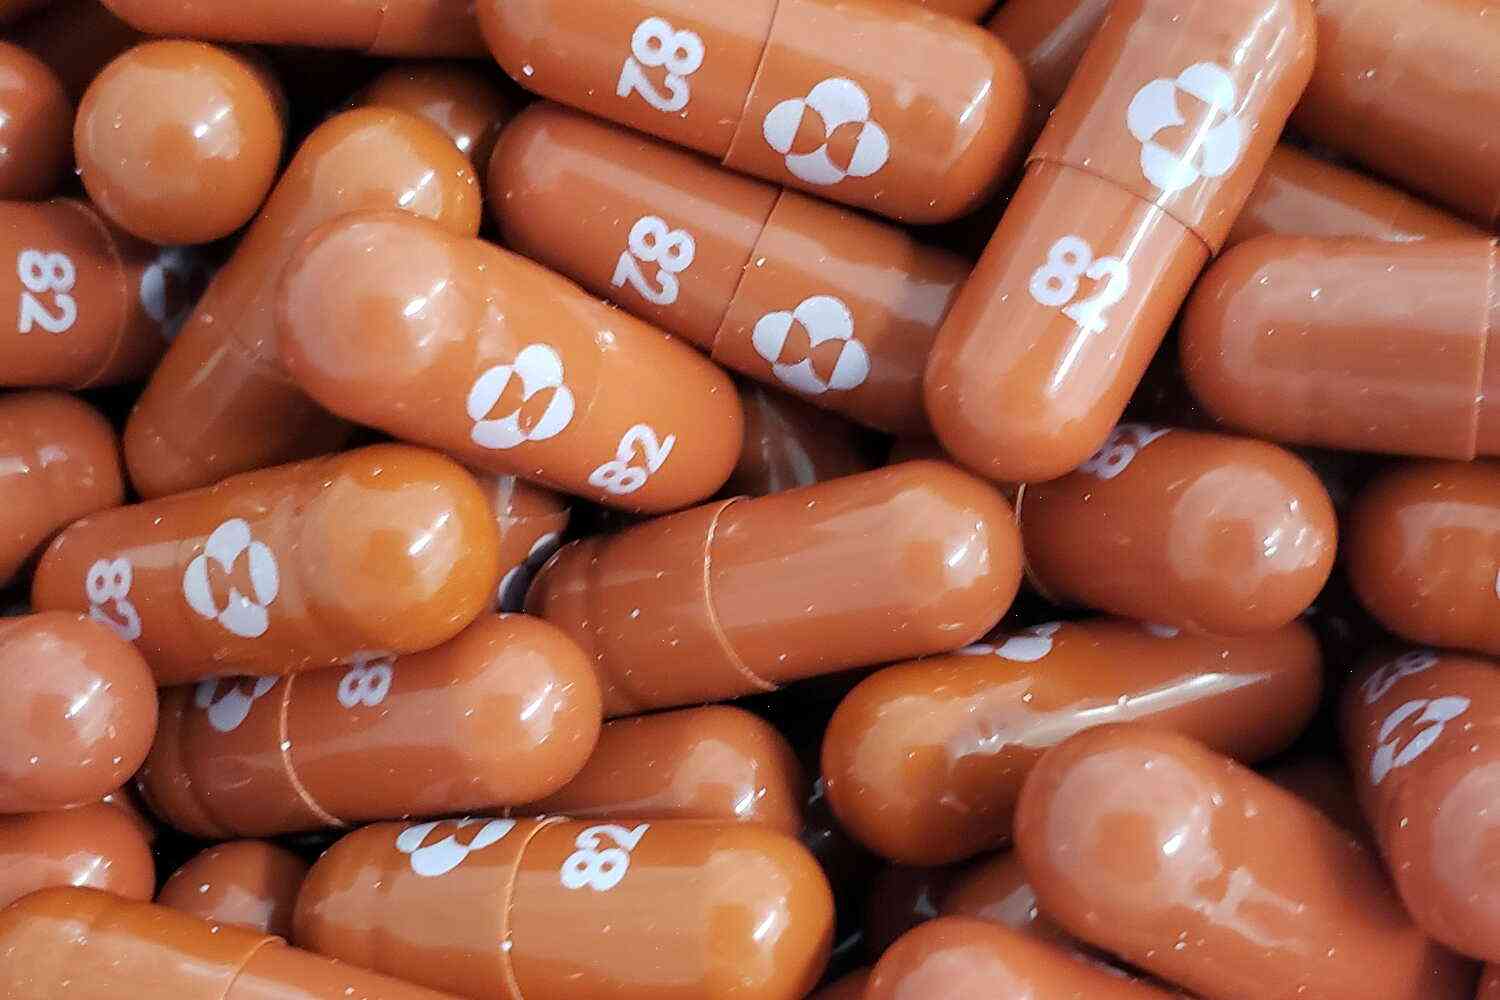 Virus warning for Merck’s $20,000 drug-coated asthma pill